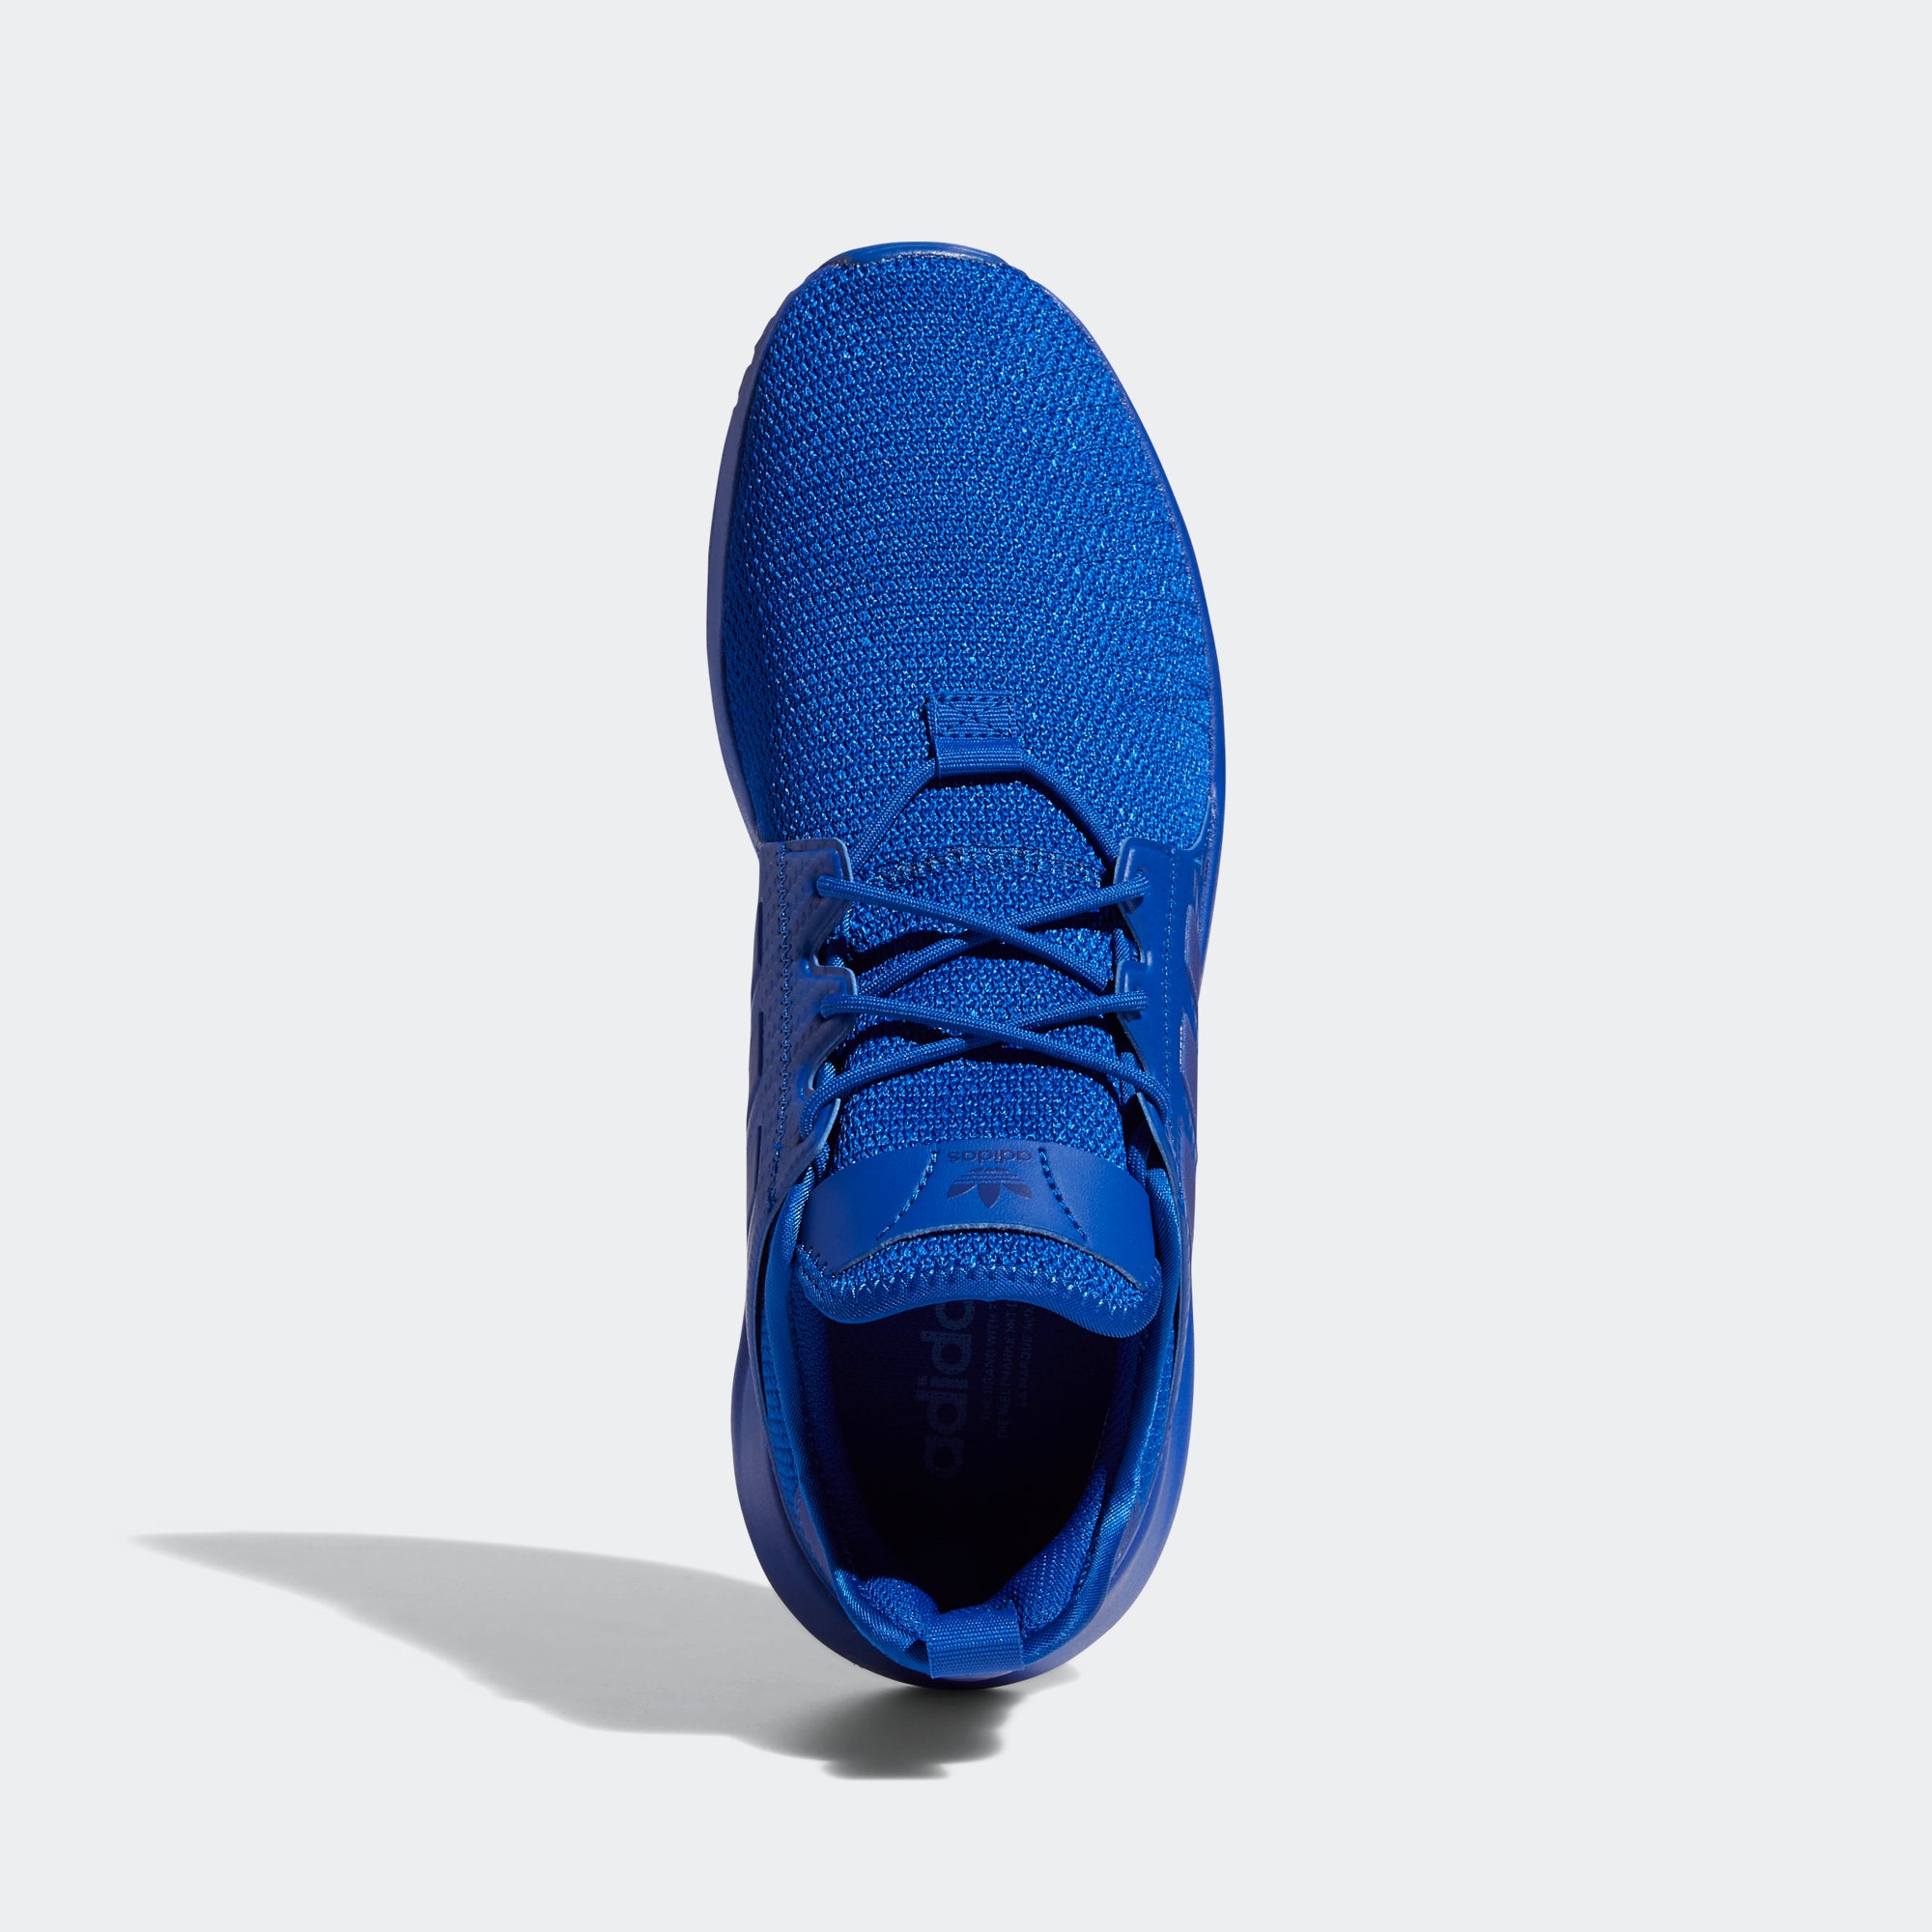 x_plr adidas blue